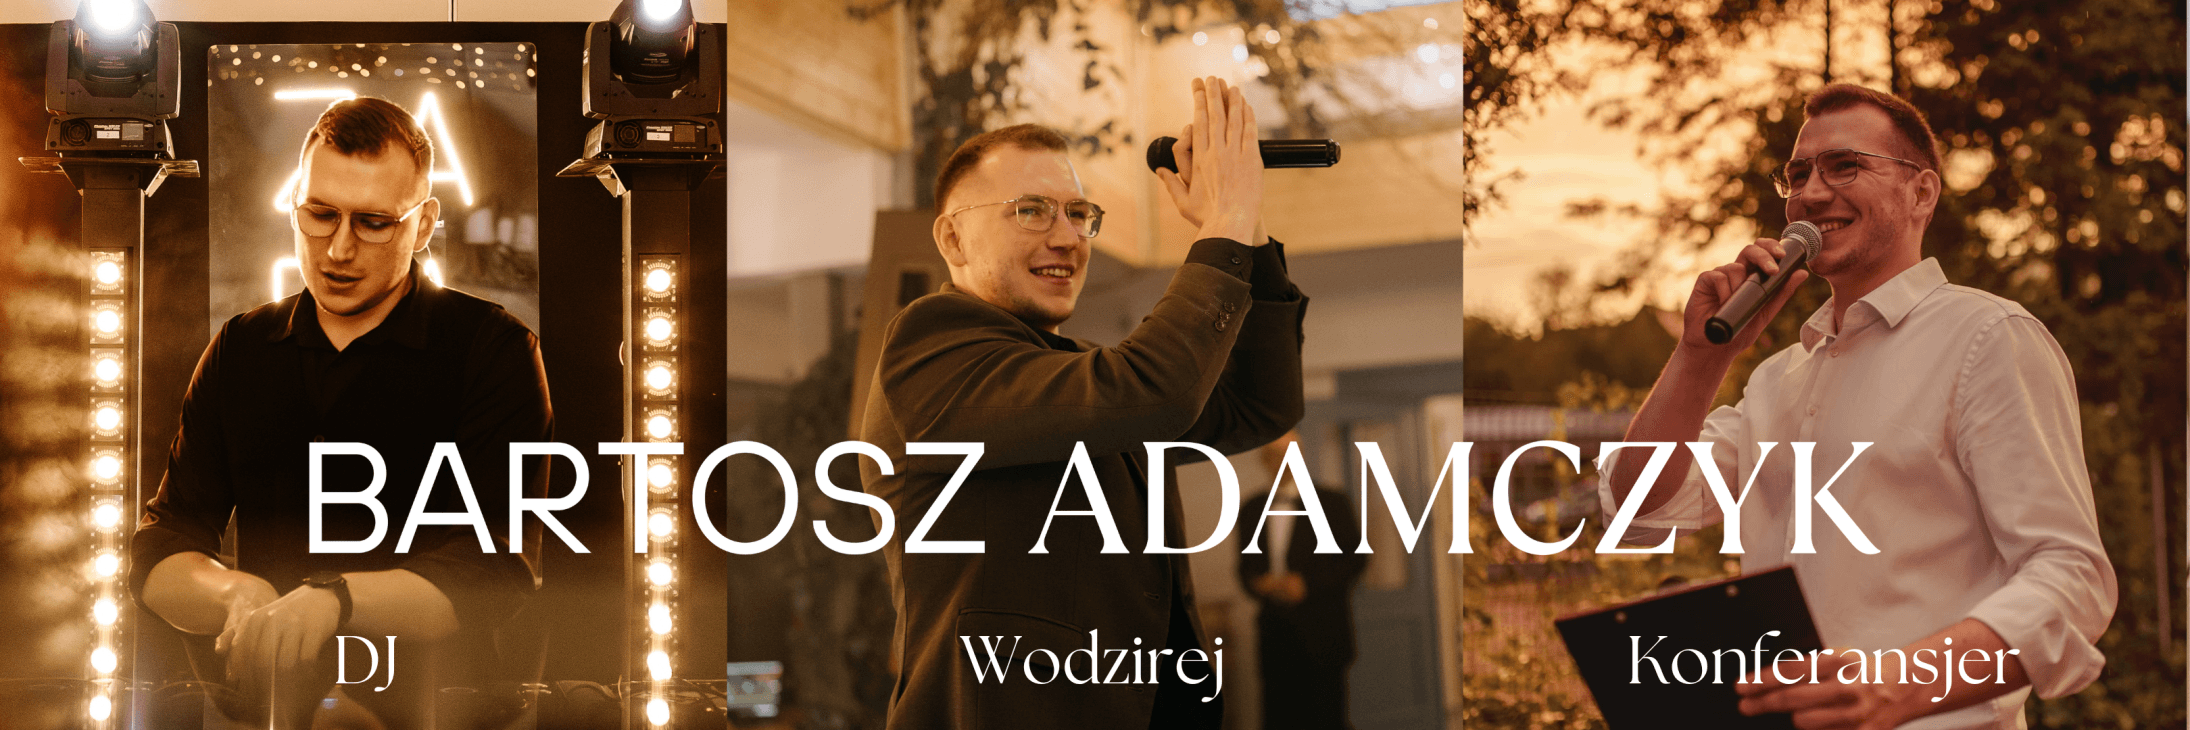 DJ Bartosz Adamczyk | DJ na wesele Rybnik, śląskie - cover